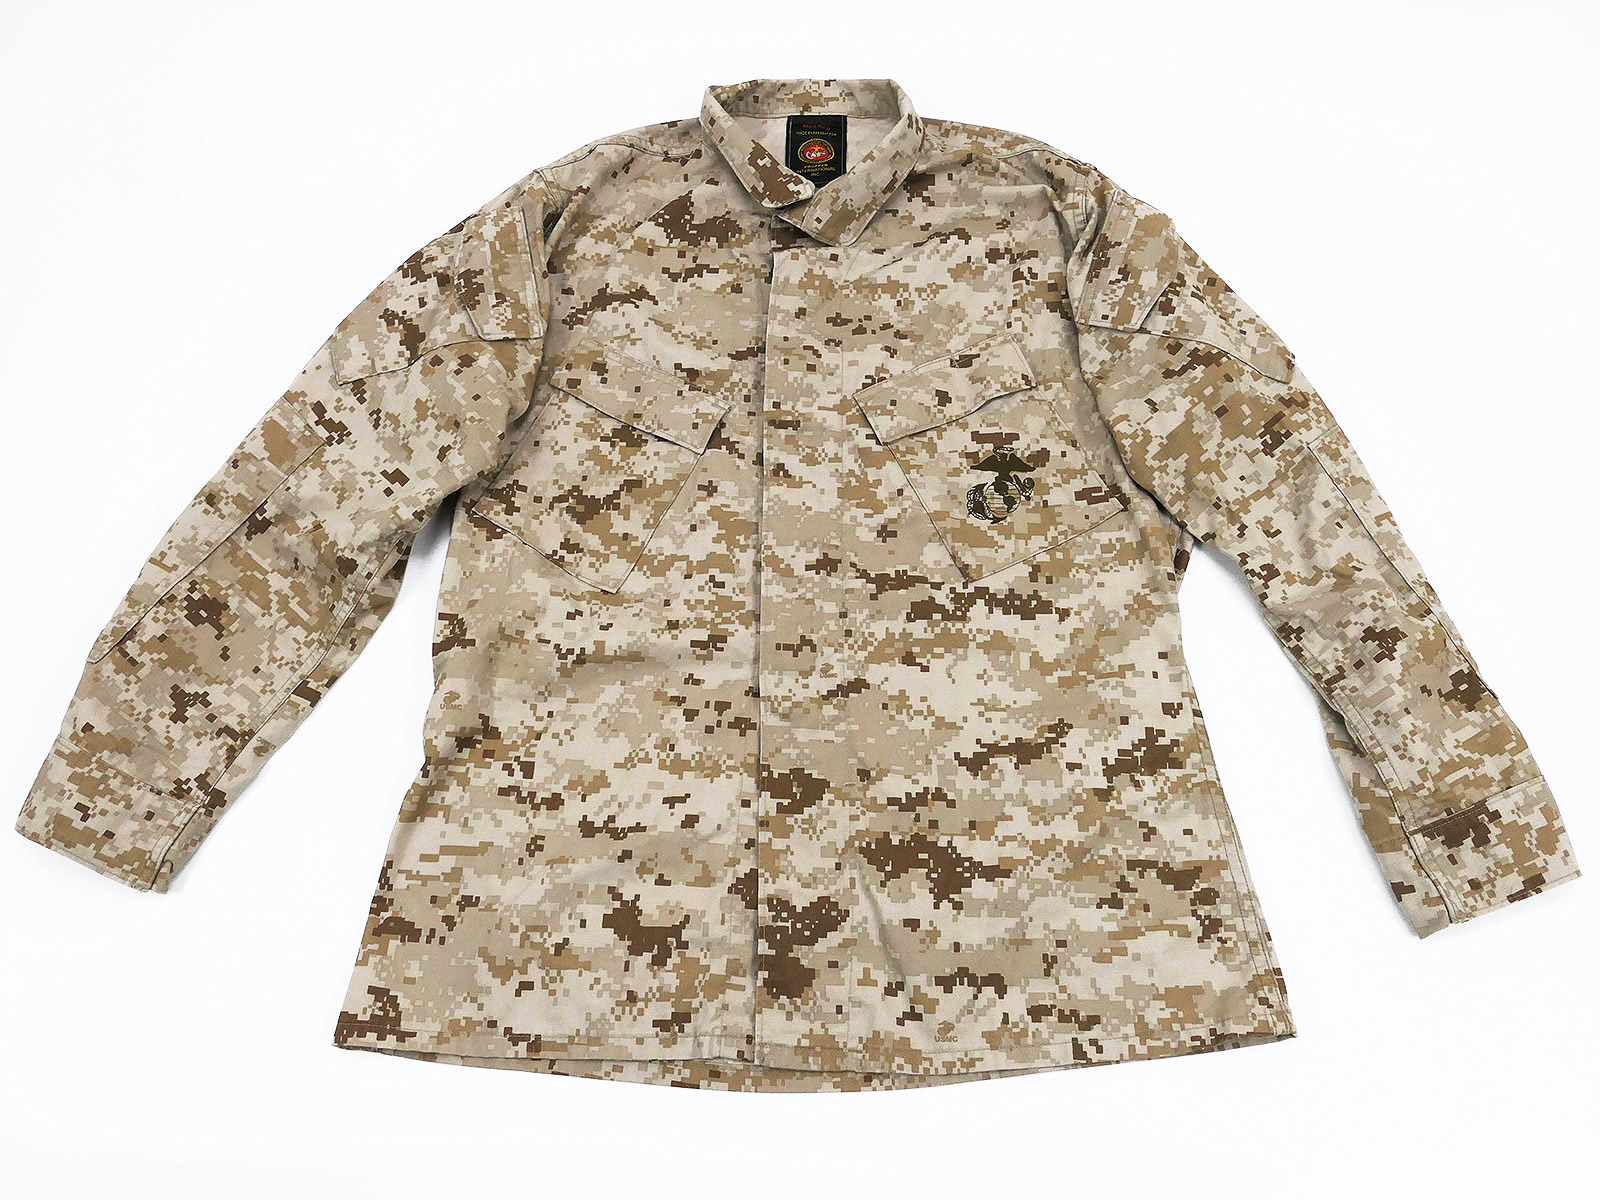 USMC Marines Blouse Desert Marpat Camouflage Field Jacket Camouflage Jacket  Medium